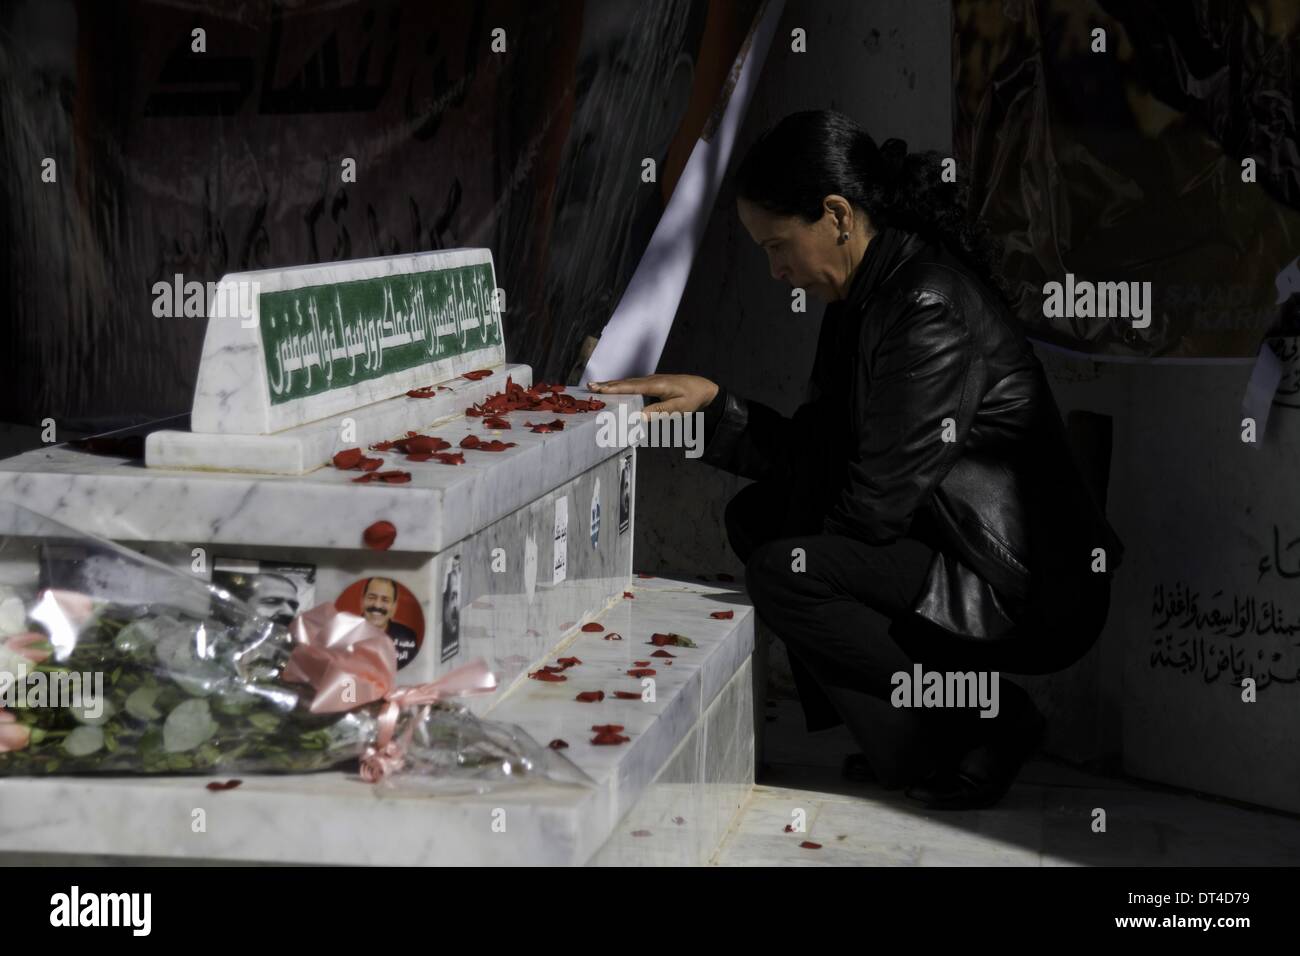 Tunis, Tunisie. Feb 8, 2014. Une femme pleurer près de la tombe de Chokri Belaïd. À l'occasion de la commémoration du premier anniversaire de l'assassinat de Chokri Belaid, des milliers de personnes se sont réunies à sa tombe au cimetière Al Jalez à Tunis Tunisie le 8 février 2014. Credit : Mohamed Krit/NurPhoto ZUMAPRESS.com/Alamy/Live News Banque D'Images